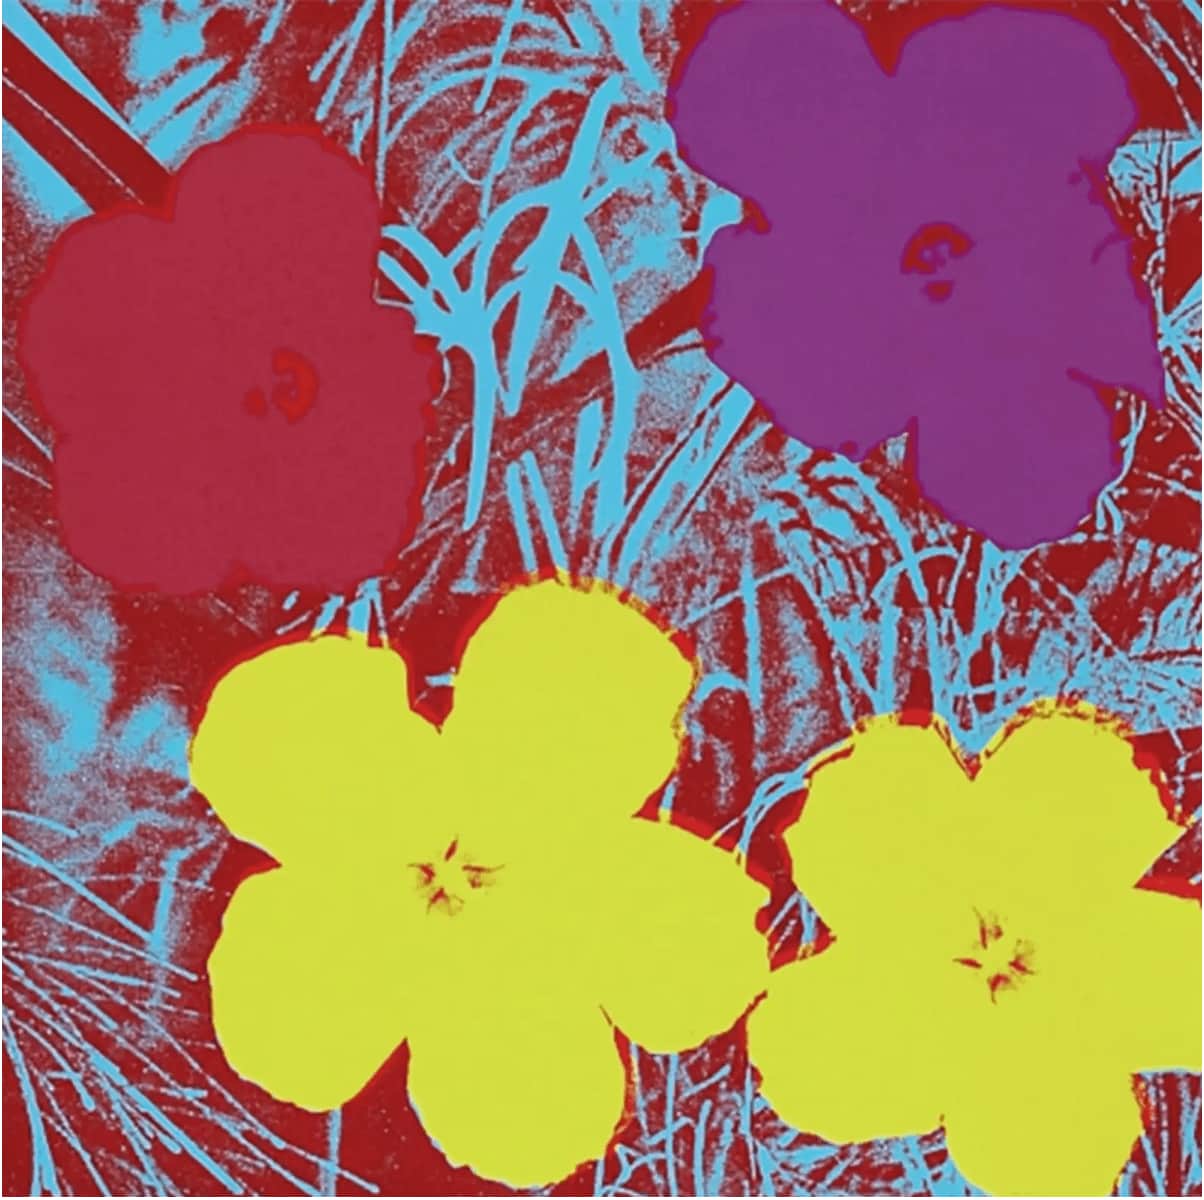 Andy Warhol, Flowers F&S.II.71, 1970